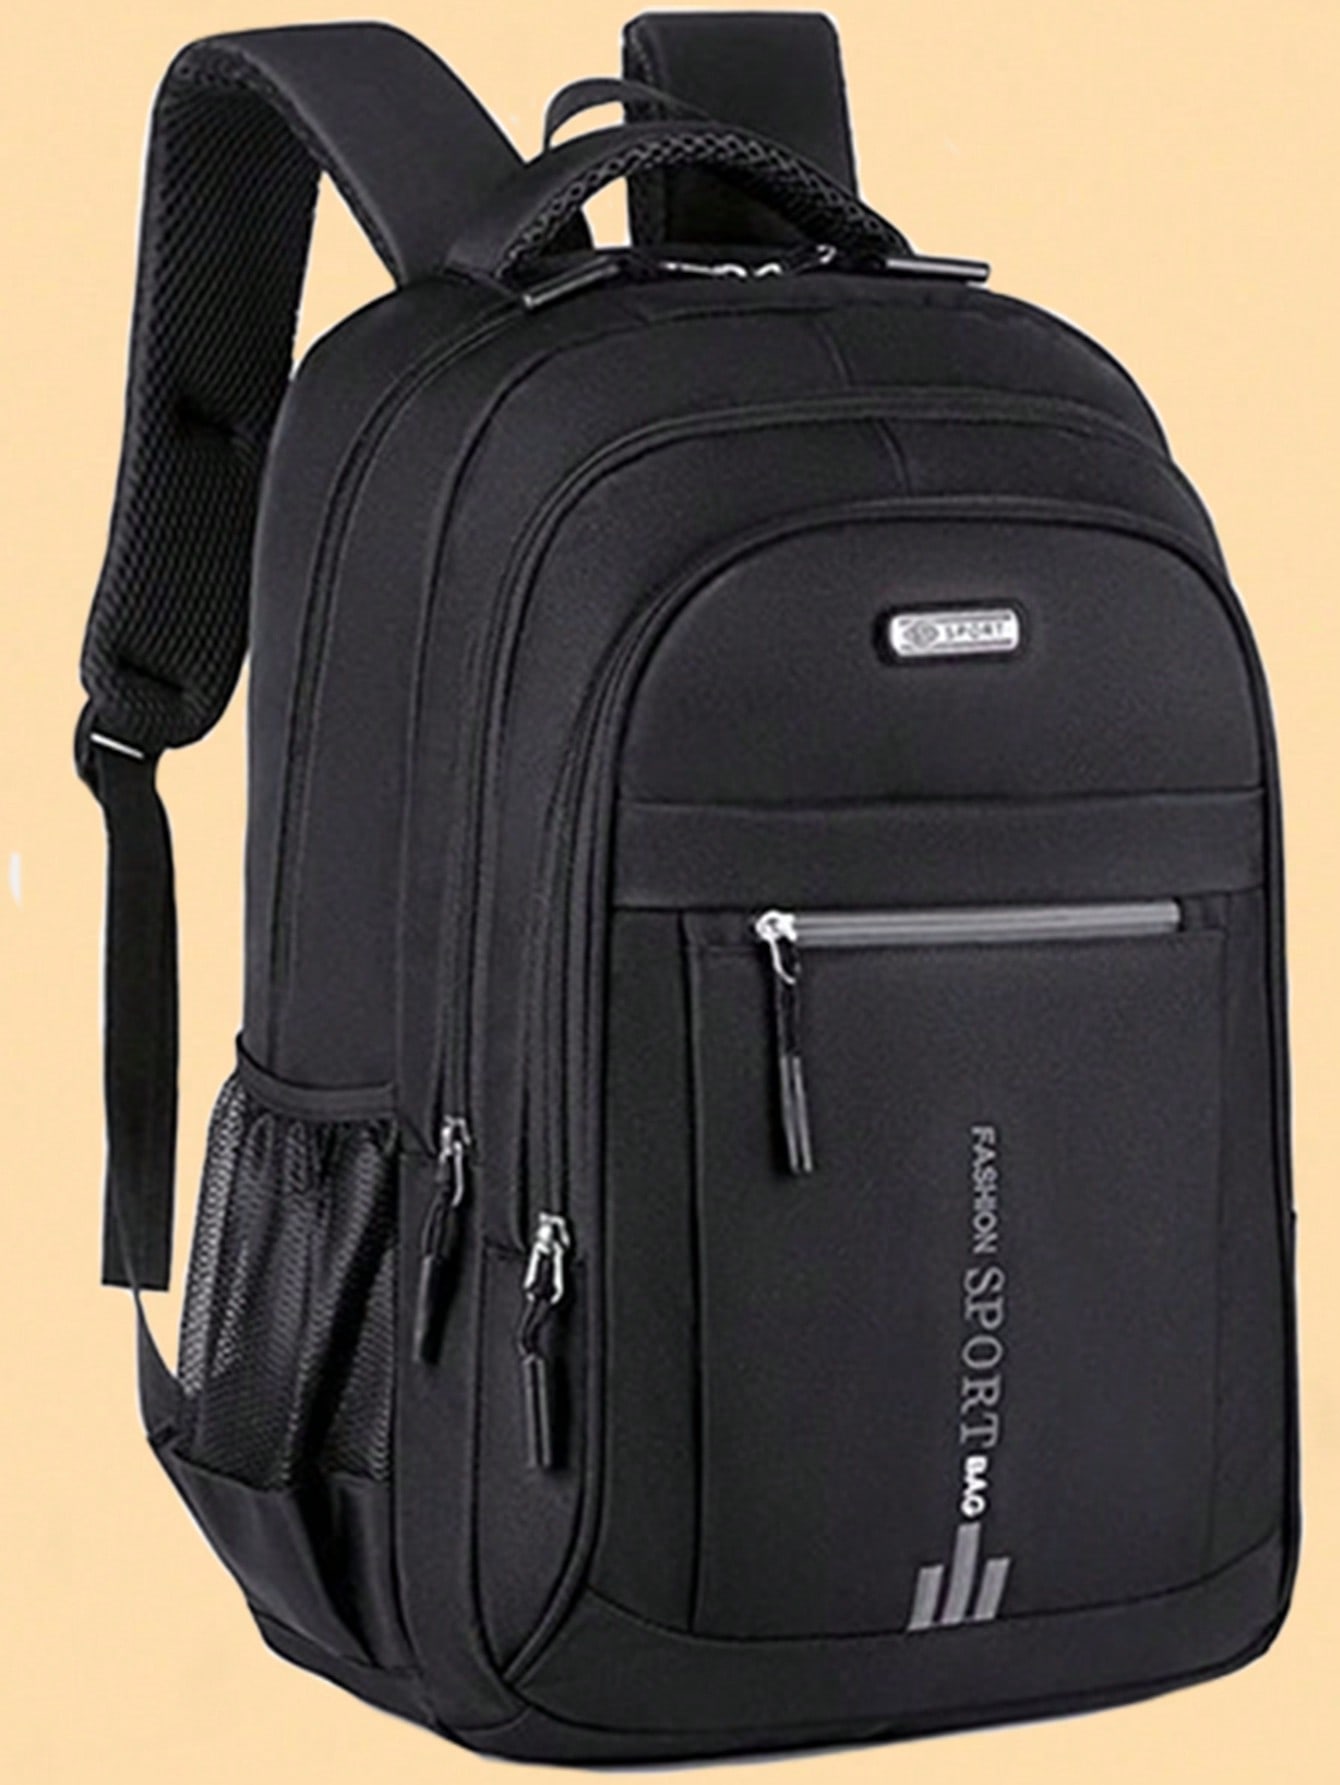 Рюкзак для выездного рабочего багажа, черный мужской кожаный дорожный рюкзак 9240 блек